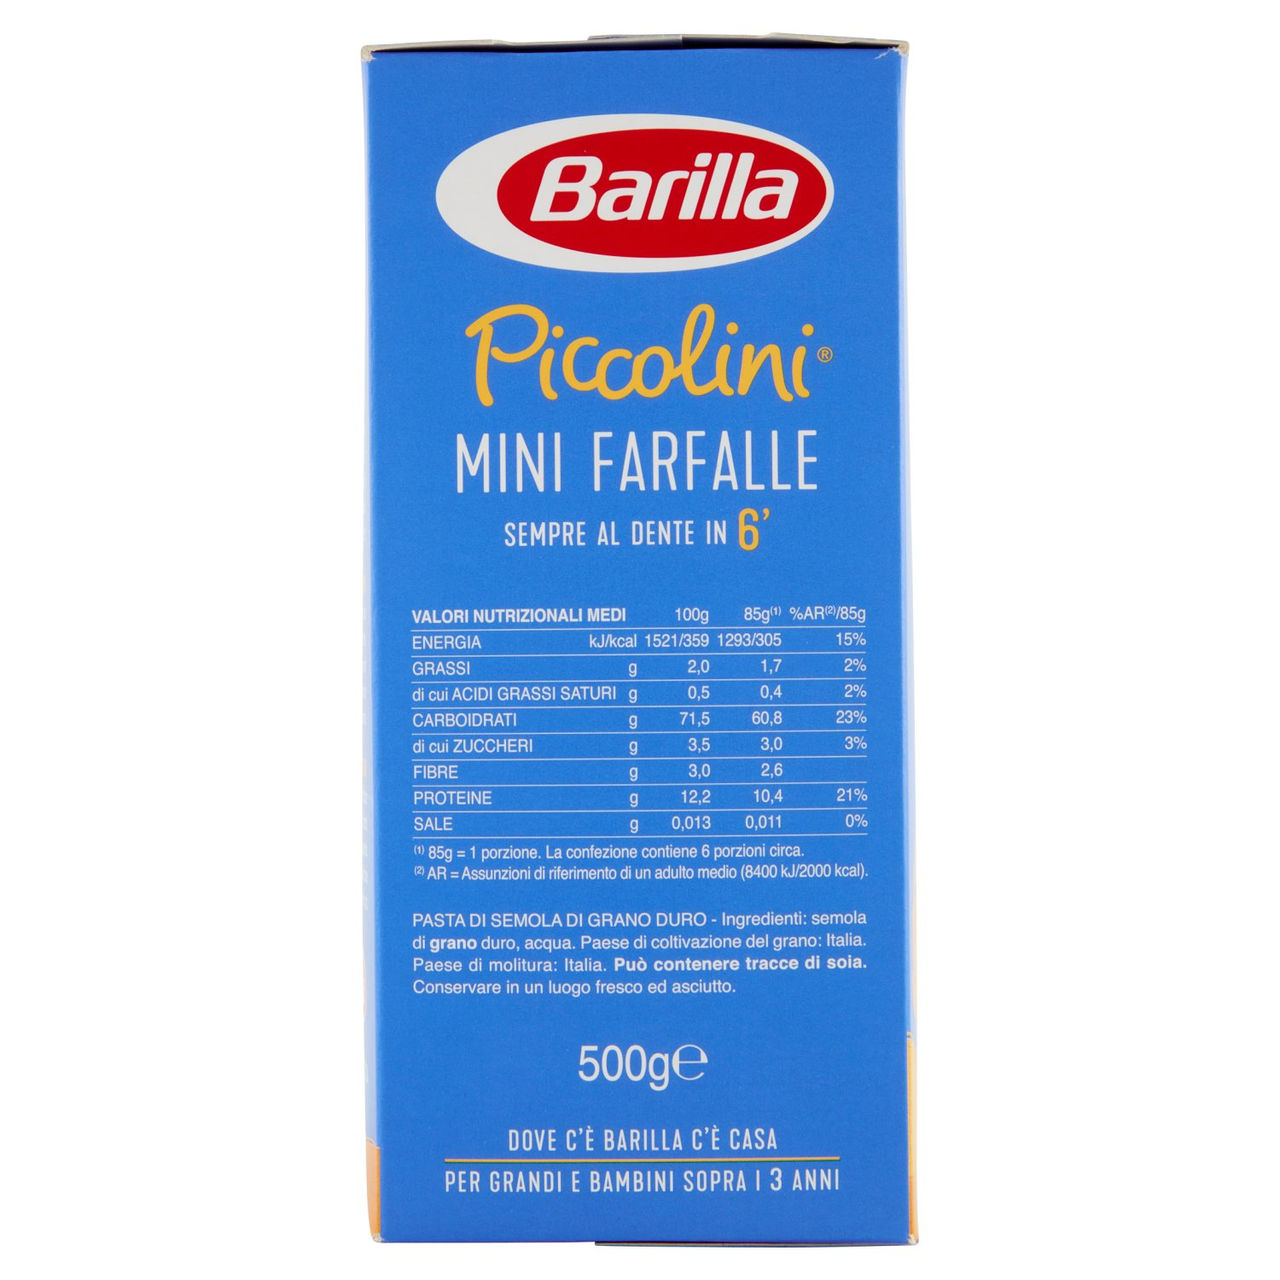 Barilla Piccolini Grano Italiano Mini Farfalle 500g